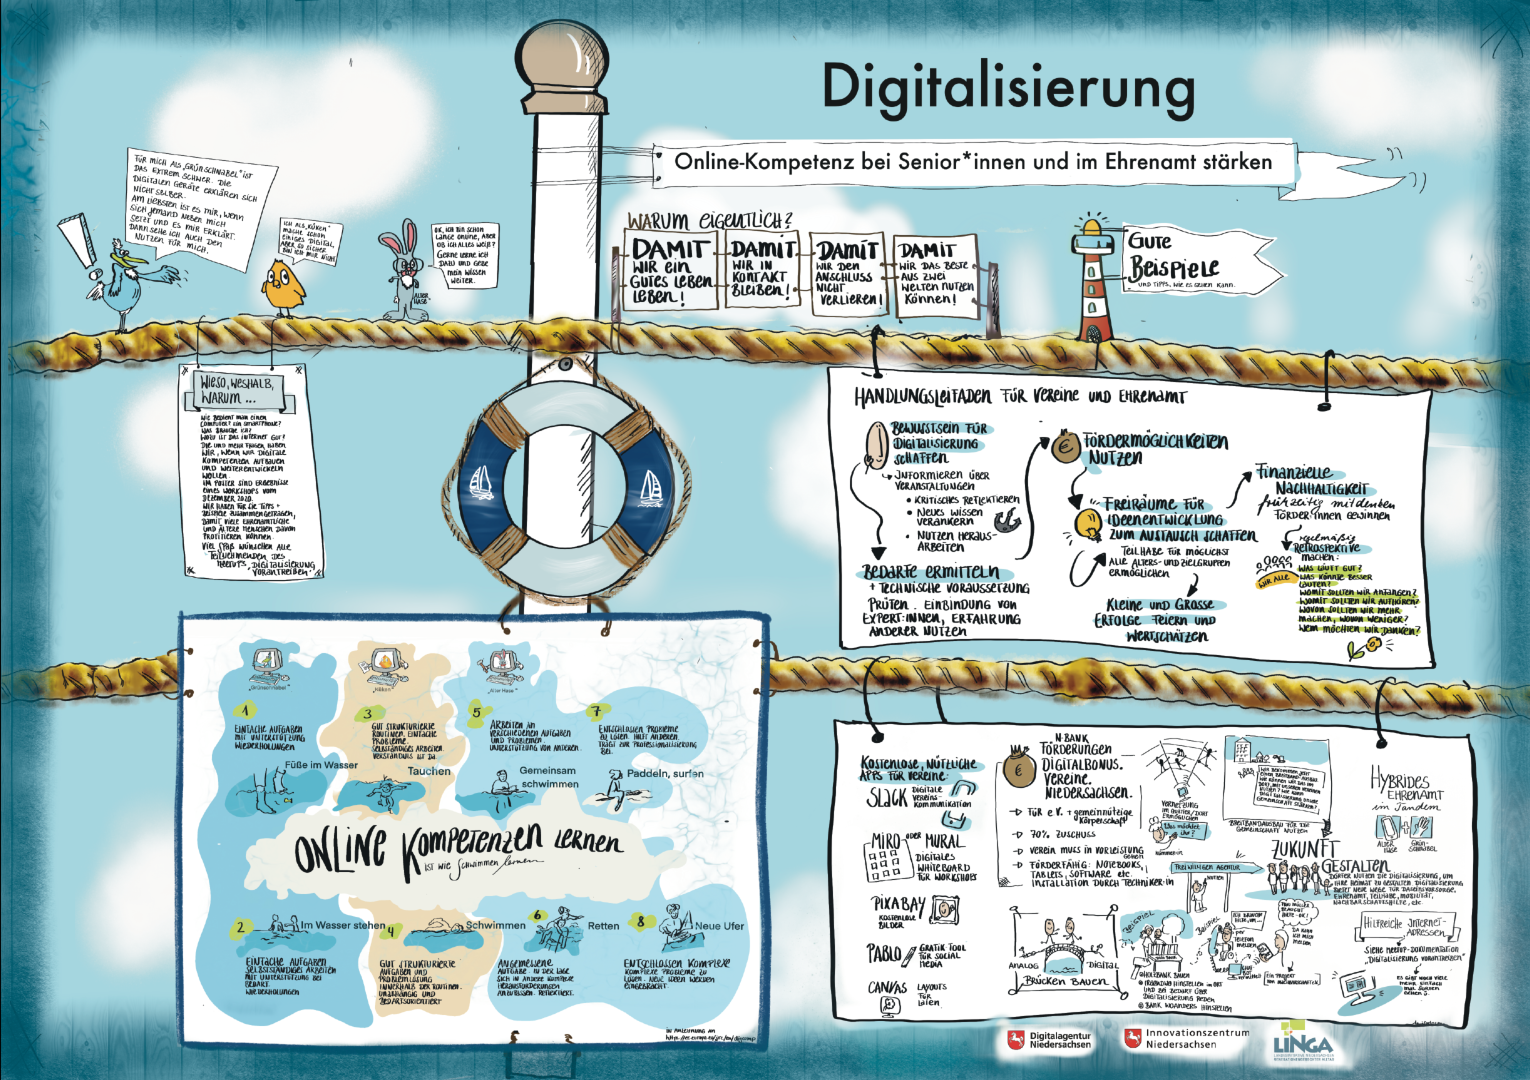 Schaubild zum Thema Digitalisierung und Online-Kompetenz stärken im Ehrenamt